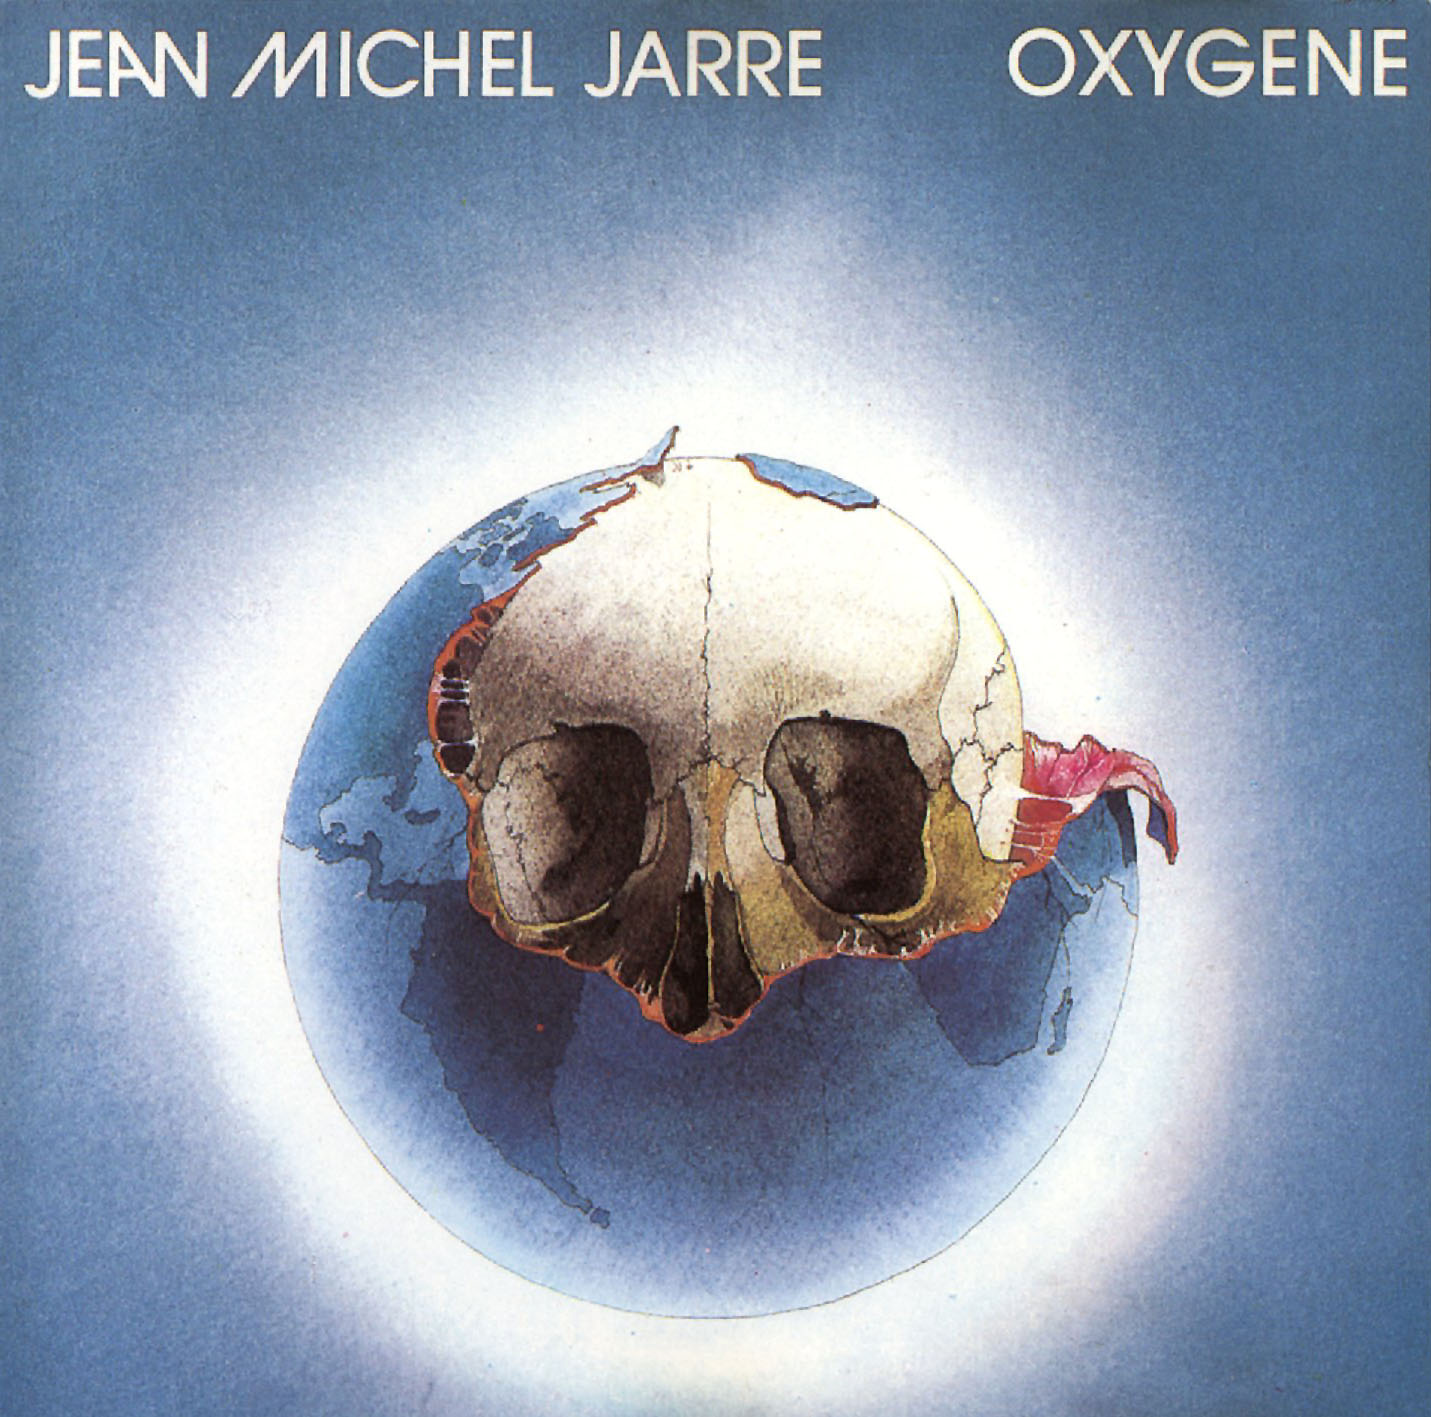 Cartula Frontal de Jean Michel Jarre - Oxygene